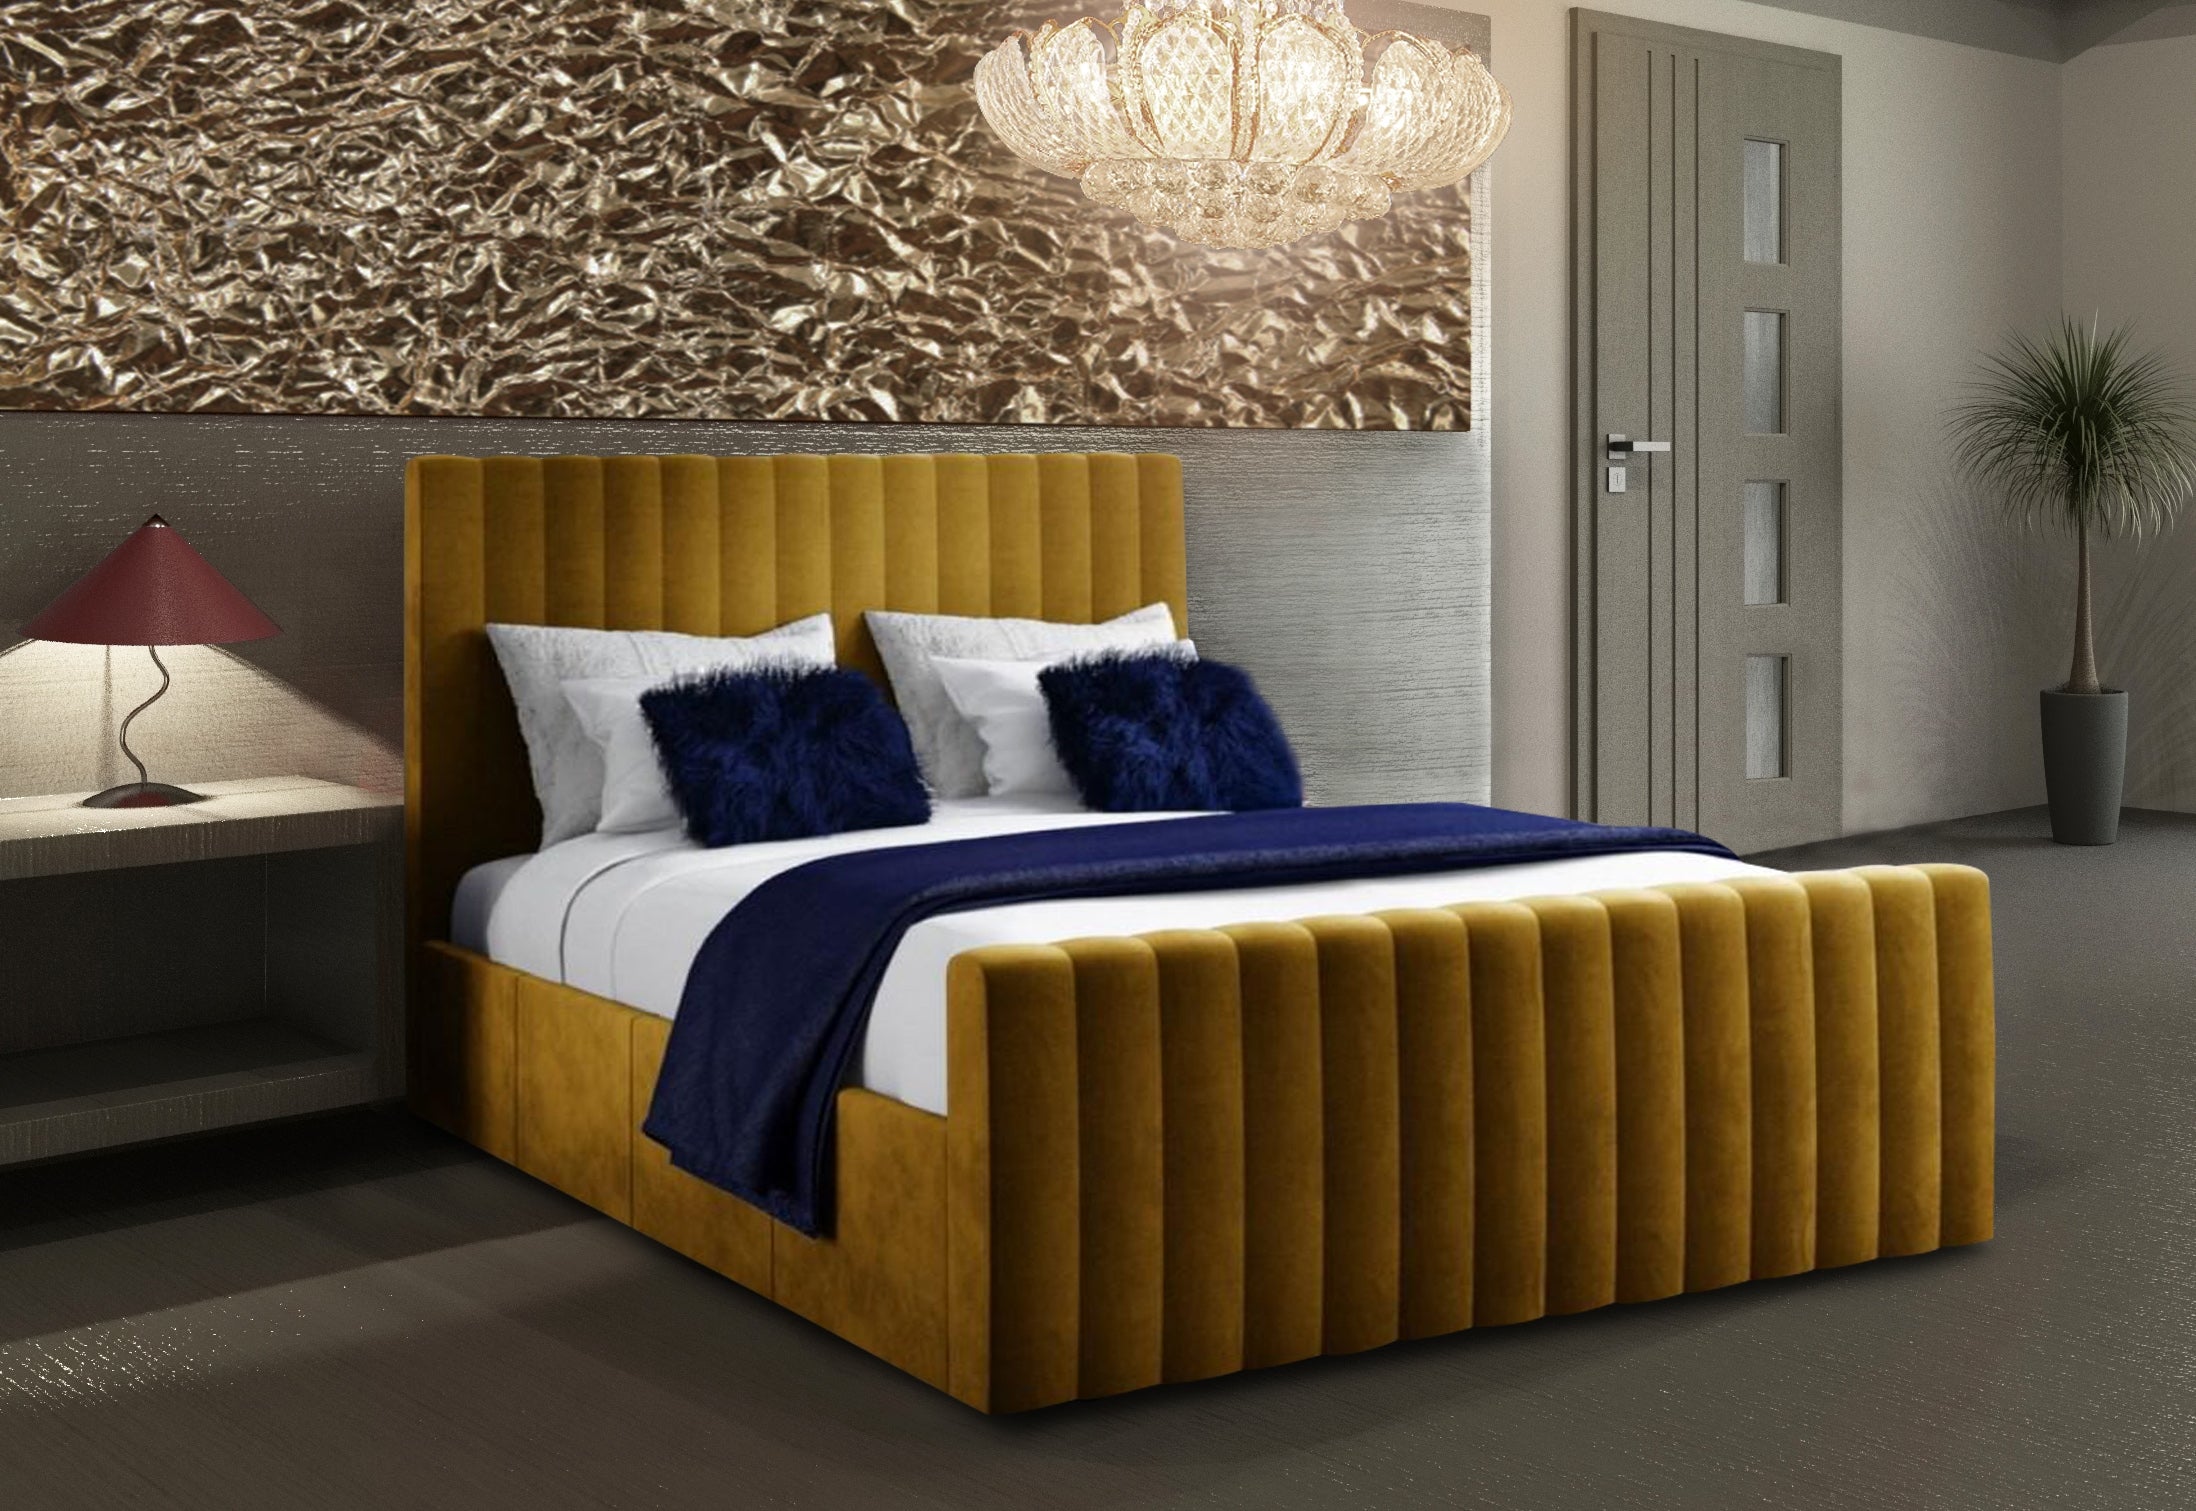 The Bespoke Sadie Bed- Fully Customisable with Storage Options- Velvet Monaco Range